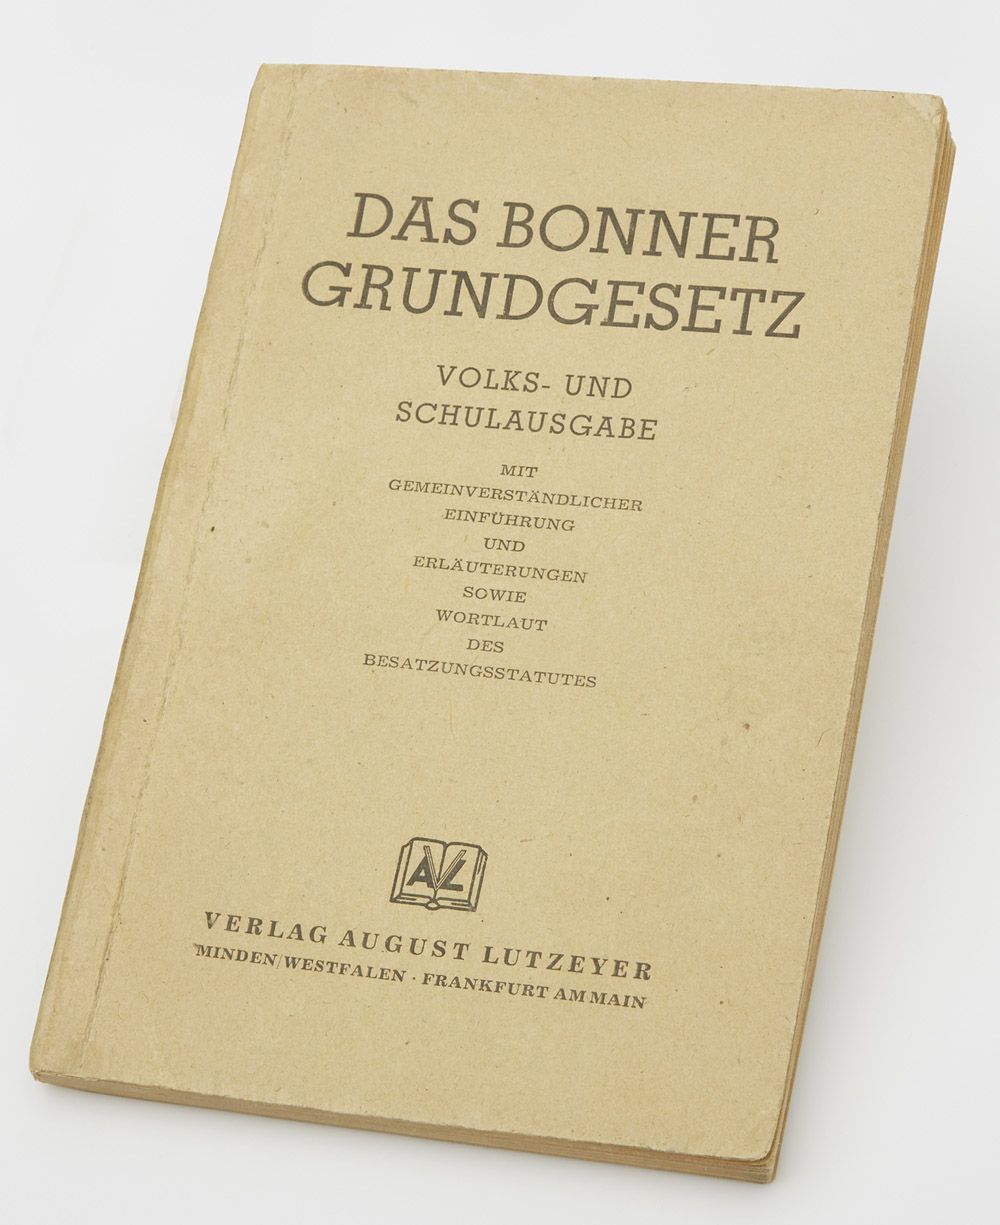 Das Bonner Grundgesetz, Verlag August Lutzeyer, 1950